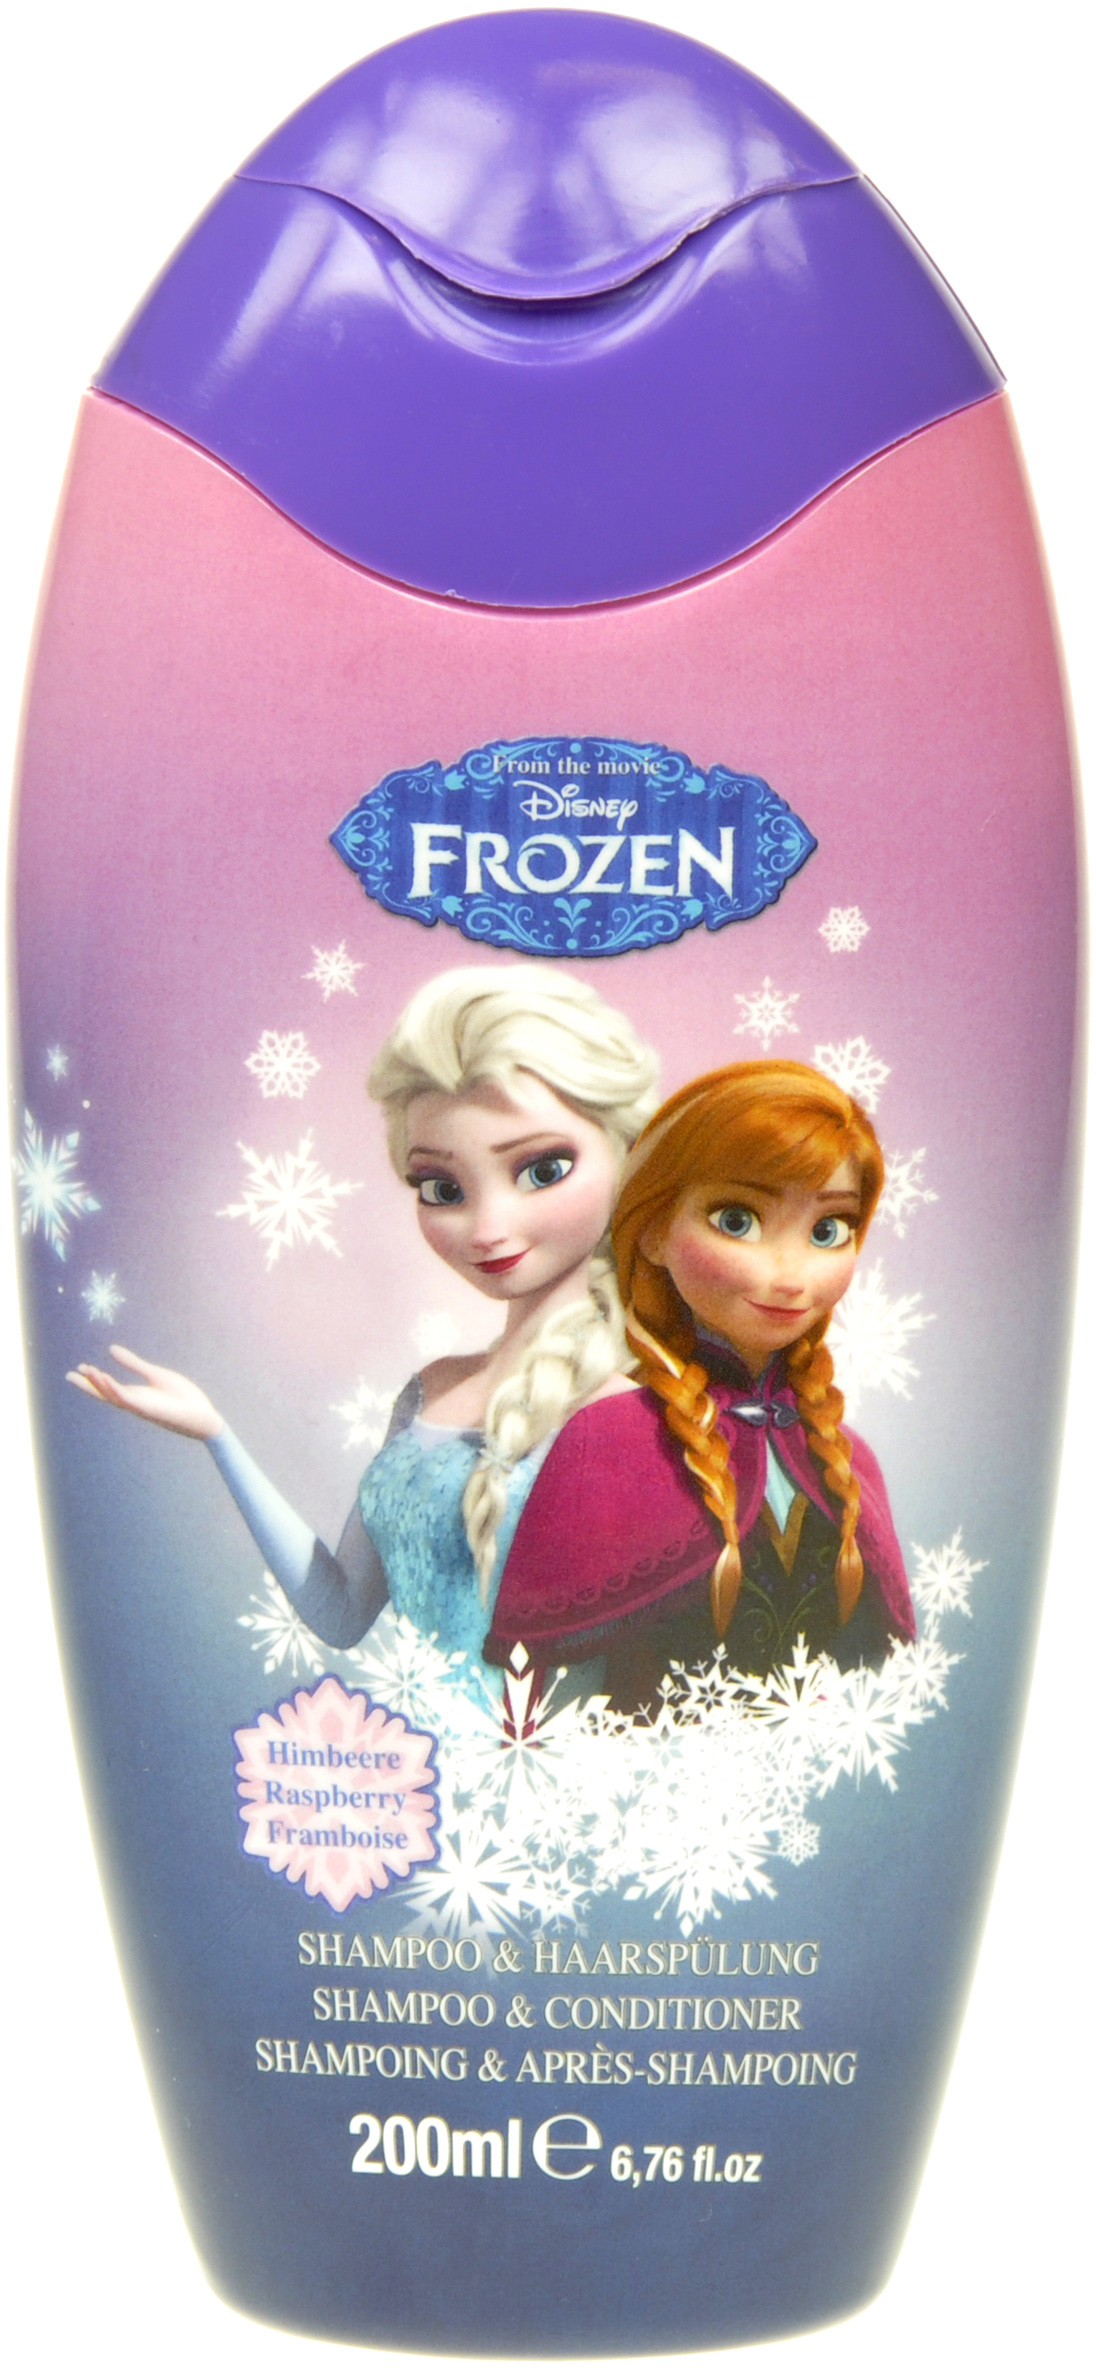 Disney Frozen Shampoo & Conditioner 200ml